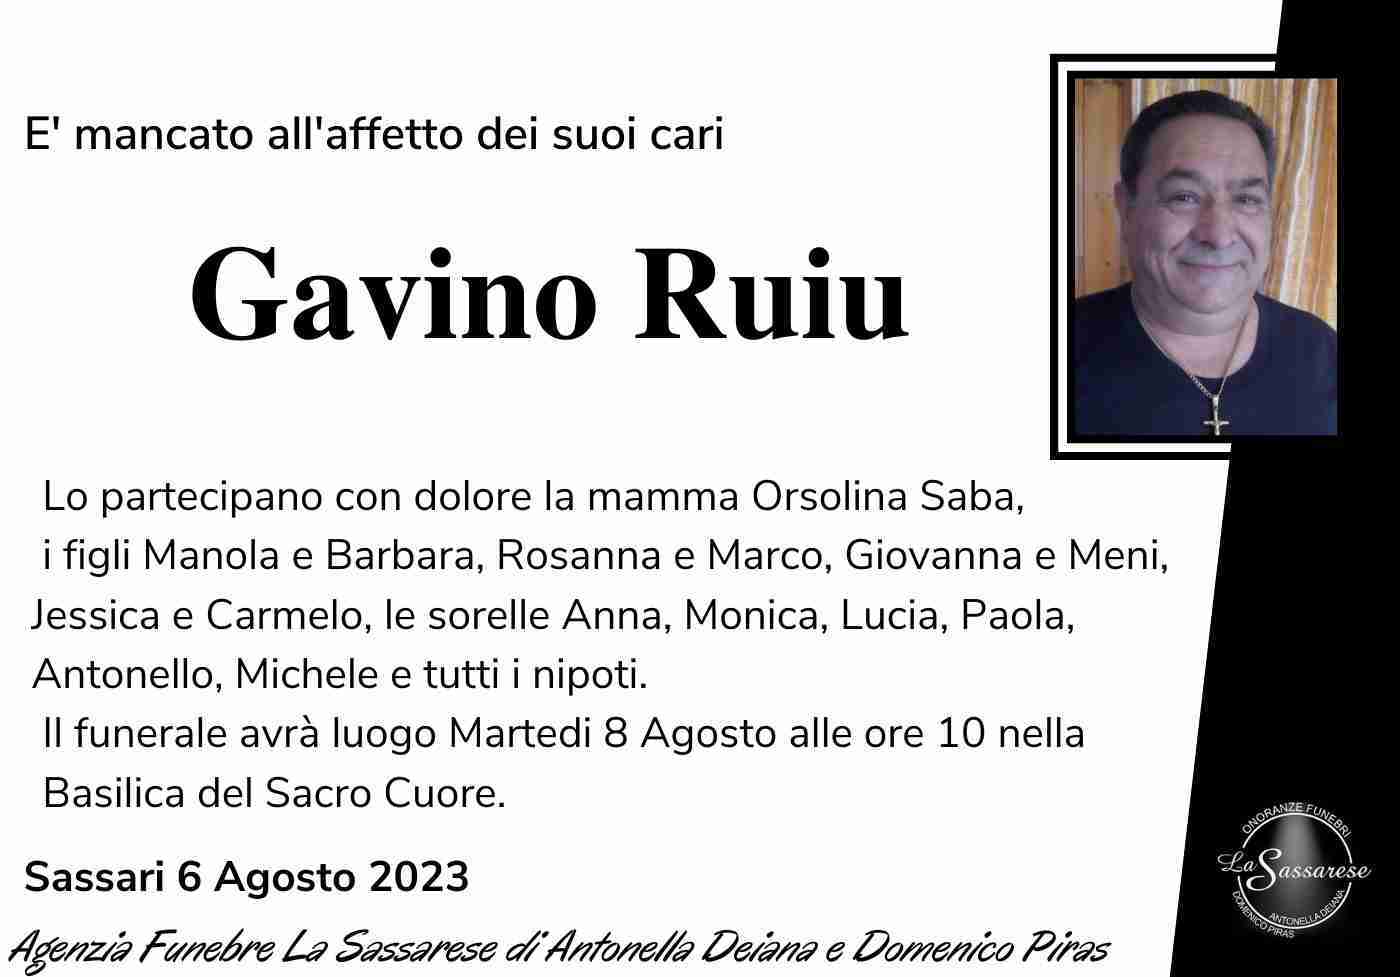 Gavino Ruiu